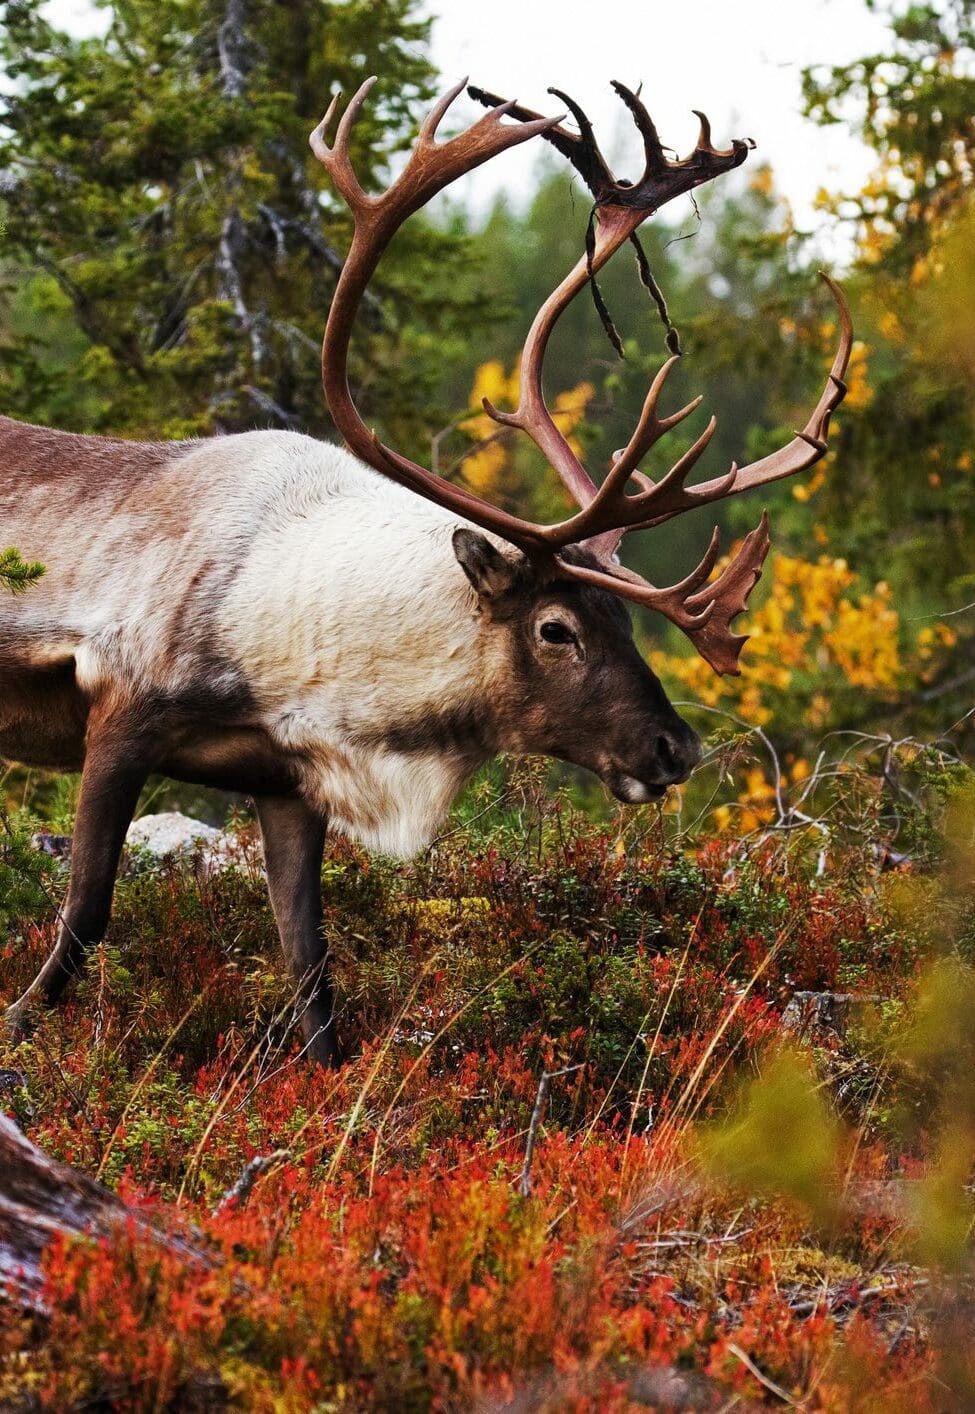 Un gran reno macho con grandes astas caminando entre los arbustos durante un colorido y vibrante follaje de otoño en Laponia, en el norte de Finlandia